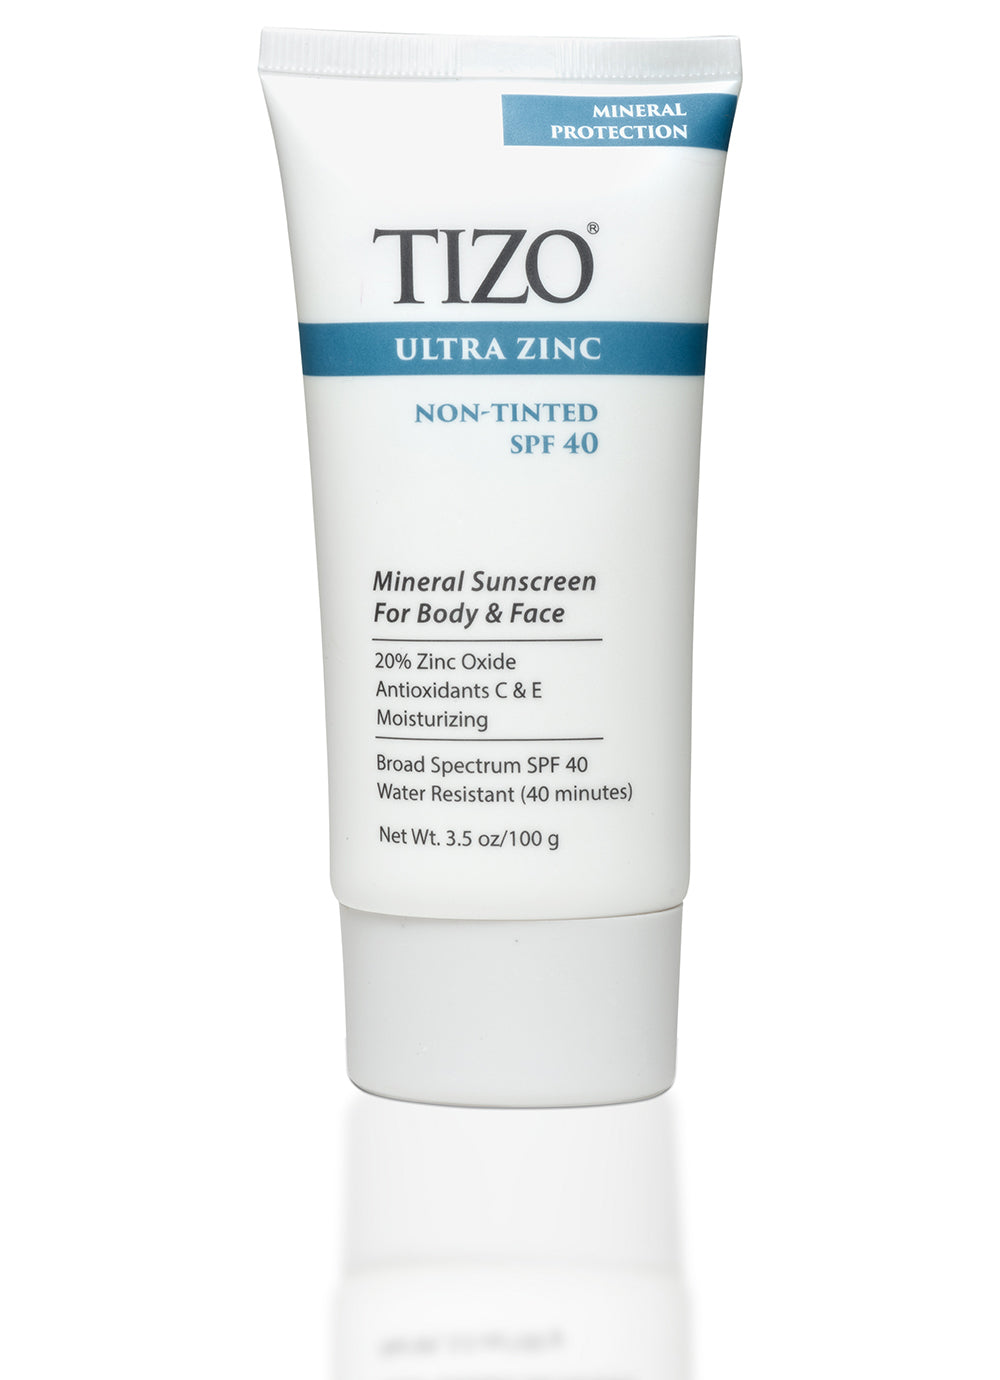 TIZO Ultra Zinc Body & Face Sunscreen - non-tinted dewy finish SPF 40